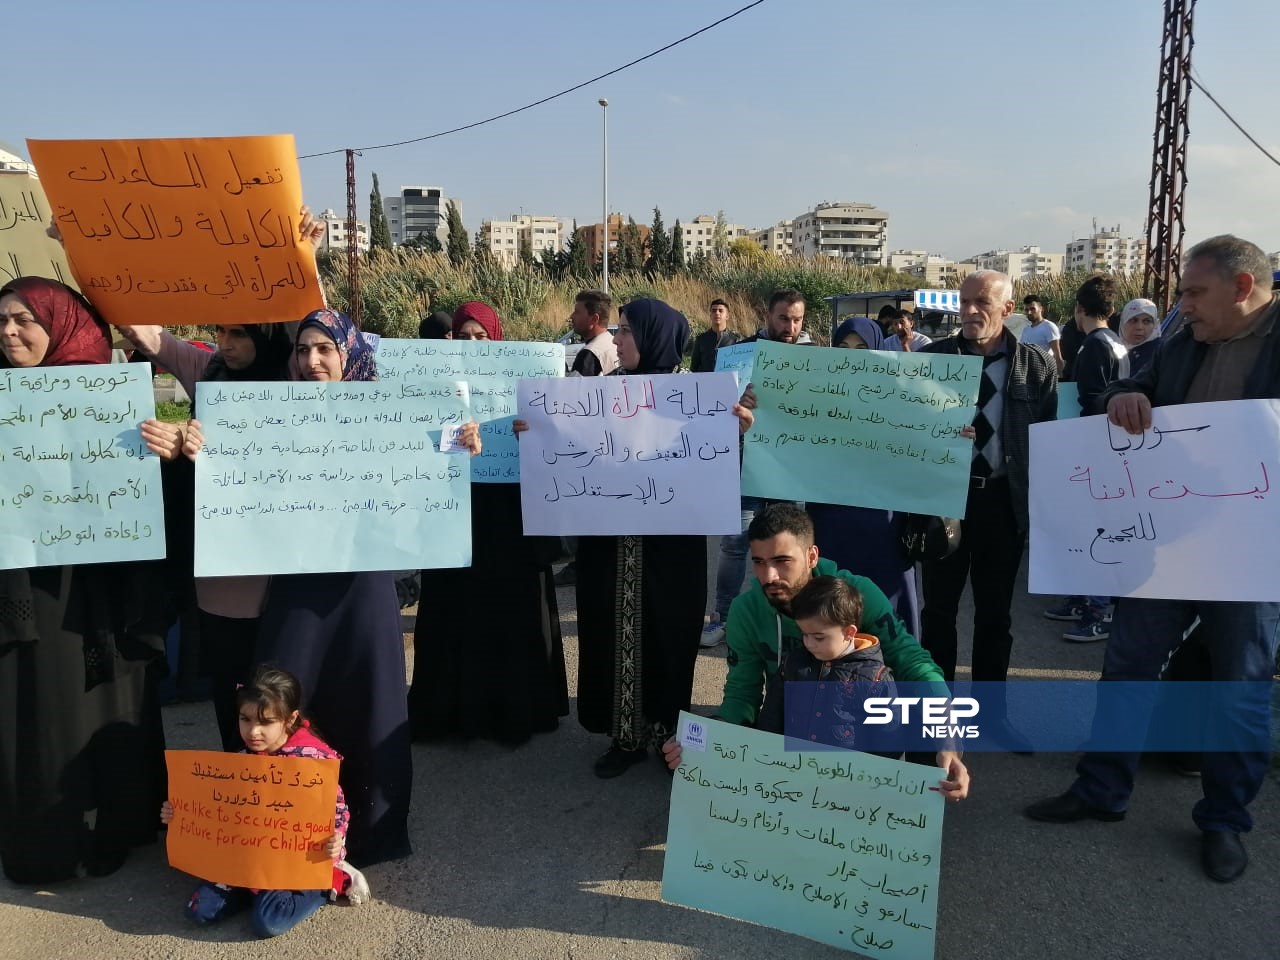 لاجئون سوريون يحتجون أمام مركز الأمم المتحدة في طرابلس لتأمين الحماية والمساعدات (فيديو - صور)